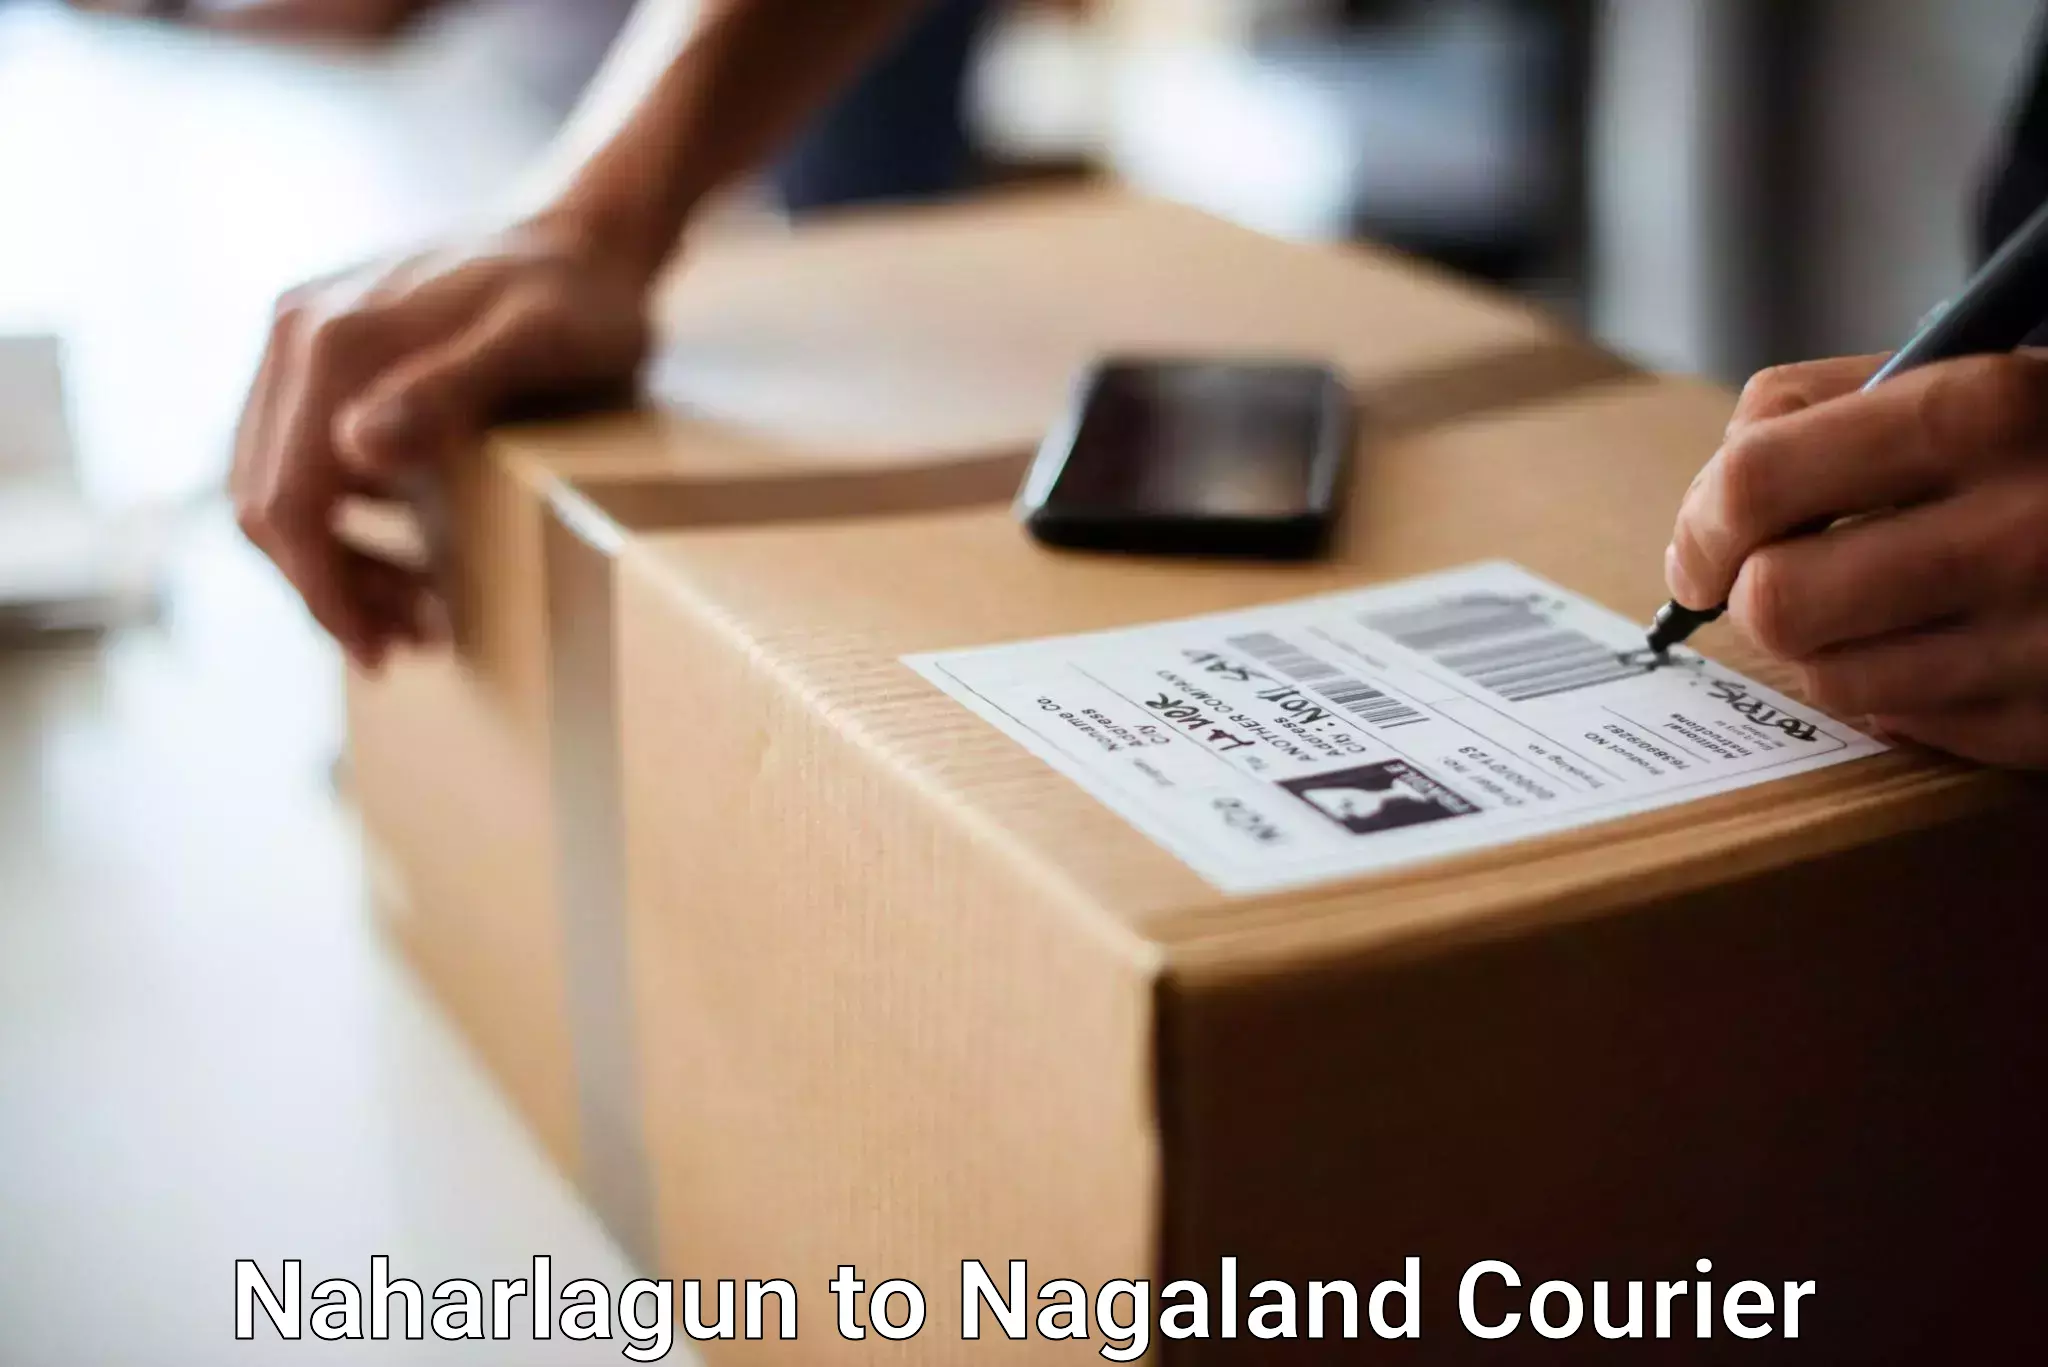 Baggage delivery optimization Naharlagun to NIT Nagaland